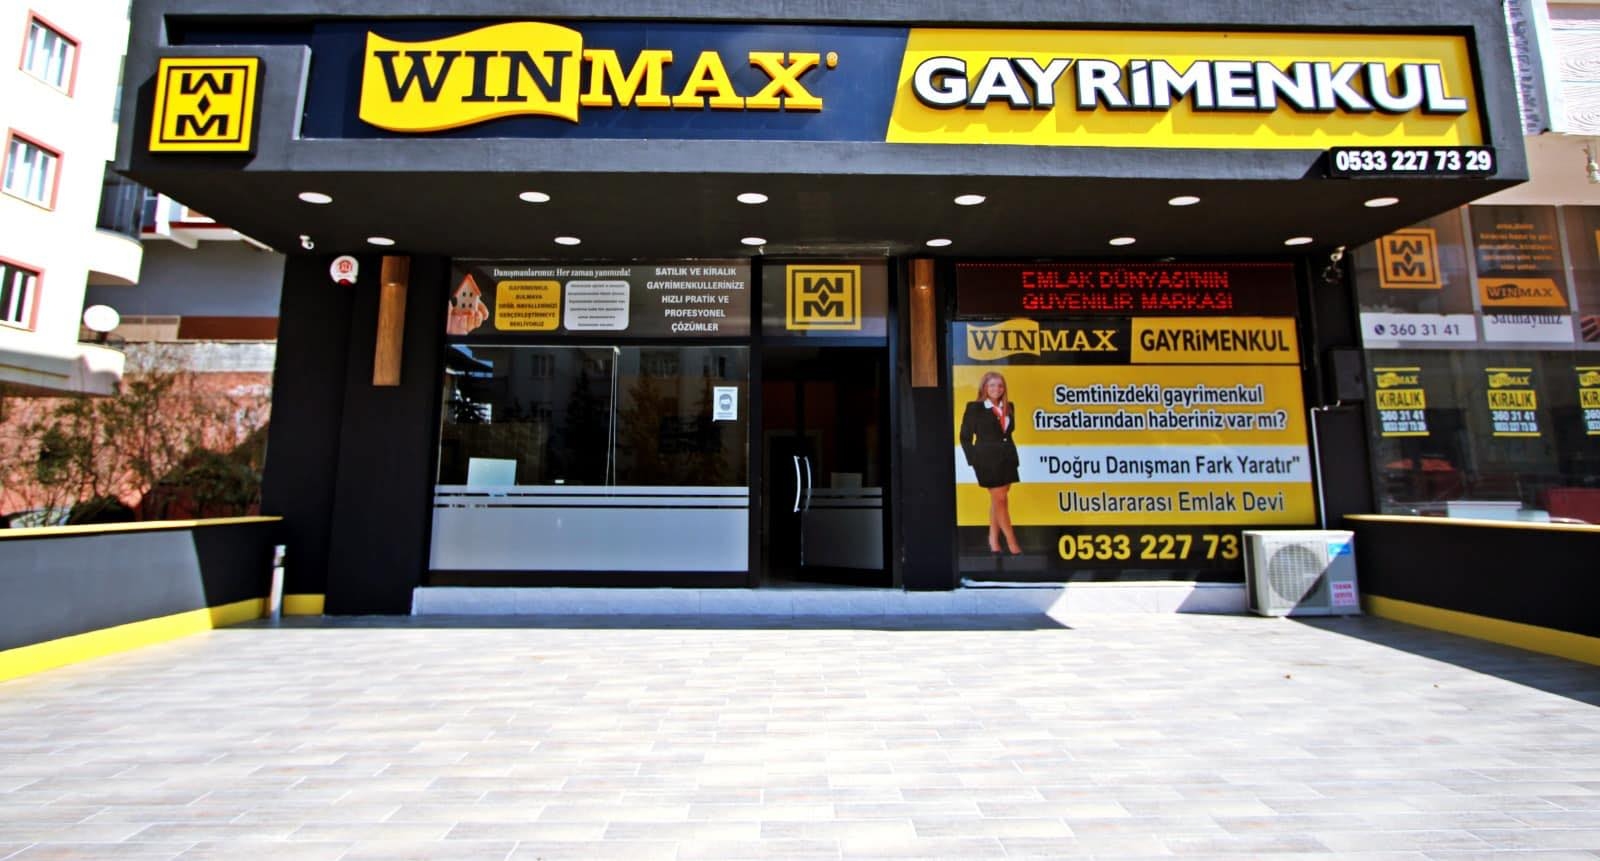 وين ماكس Winmax Gayrimenkul شركة رائدة في مجال بيع وشراء العقارات